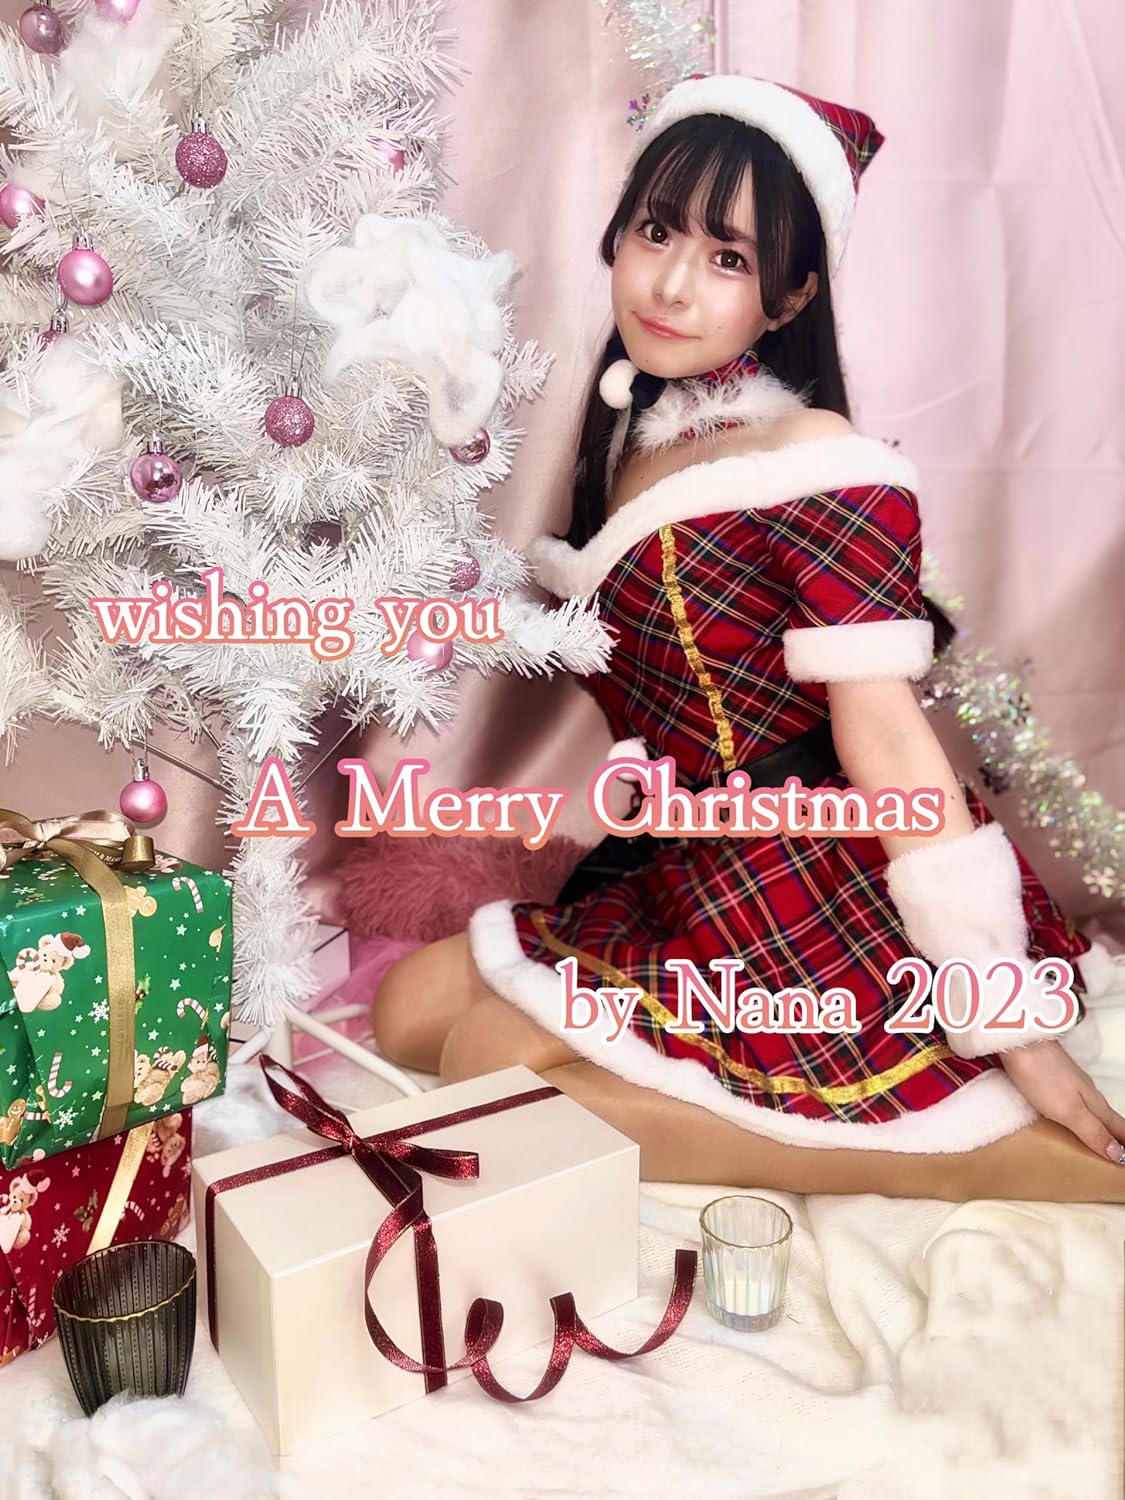 成美菜々クリスマスフォトブック2023: wishing you a Merry Christmas by Nana 2023 Kindle版のサンプル画像